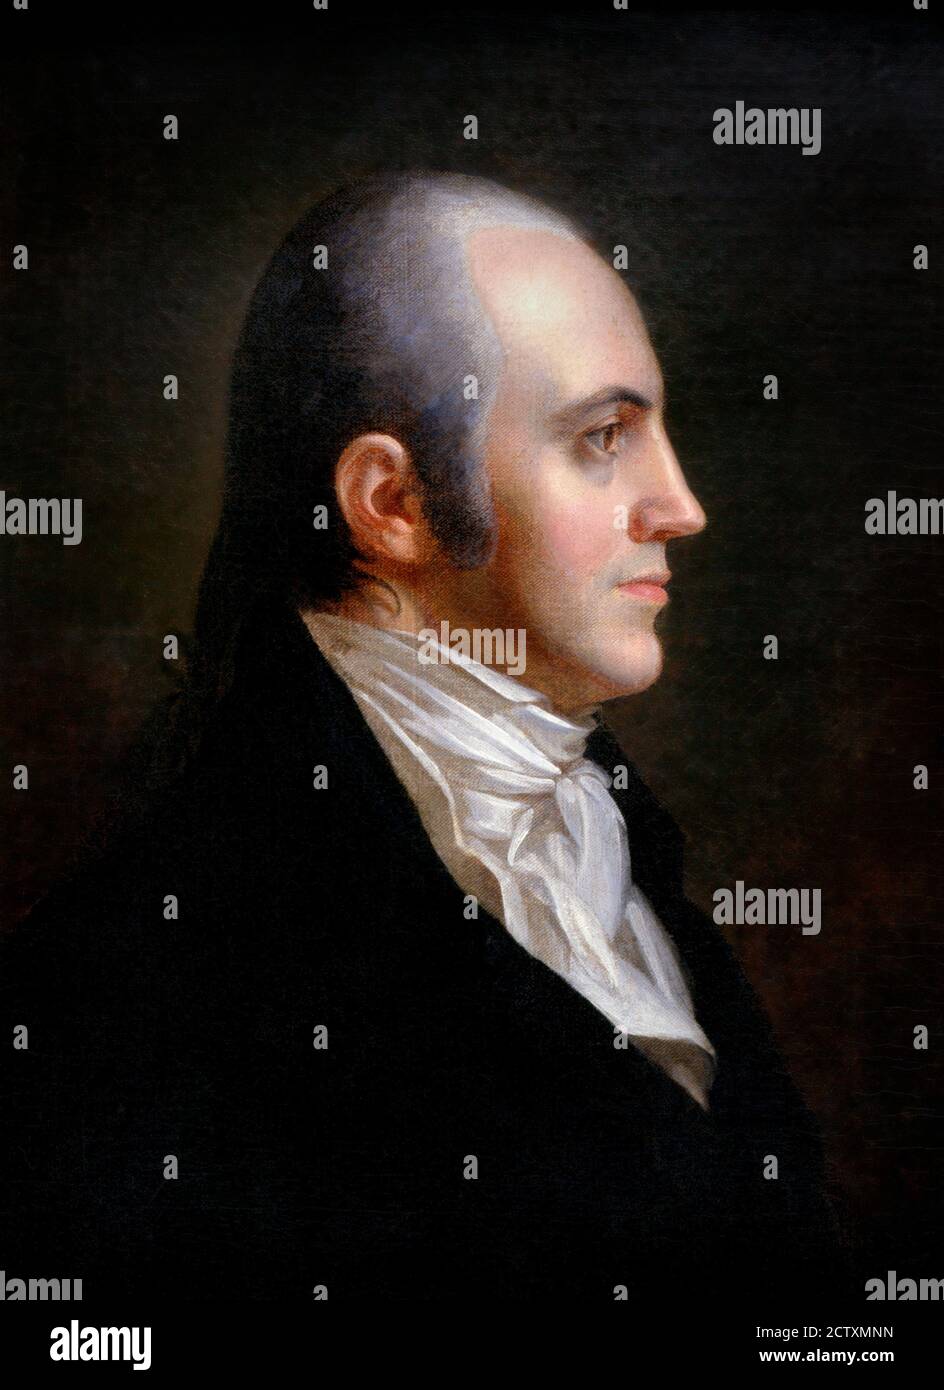 Aaron Burr Porträt eines der amerikanischen Gründerväter, Aaron Burr Jr. (1756-1836) von John Vanderlyn, Öl auf Leinwand, 1802. Burr war der dritte Vize-Präsident der Vereinigten Staaten, ist aber am bekanntesten dafür, Alexander Hamilton in einem Duell im Jahr 1804 getötet zu haben. Stockfoto